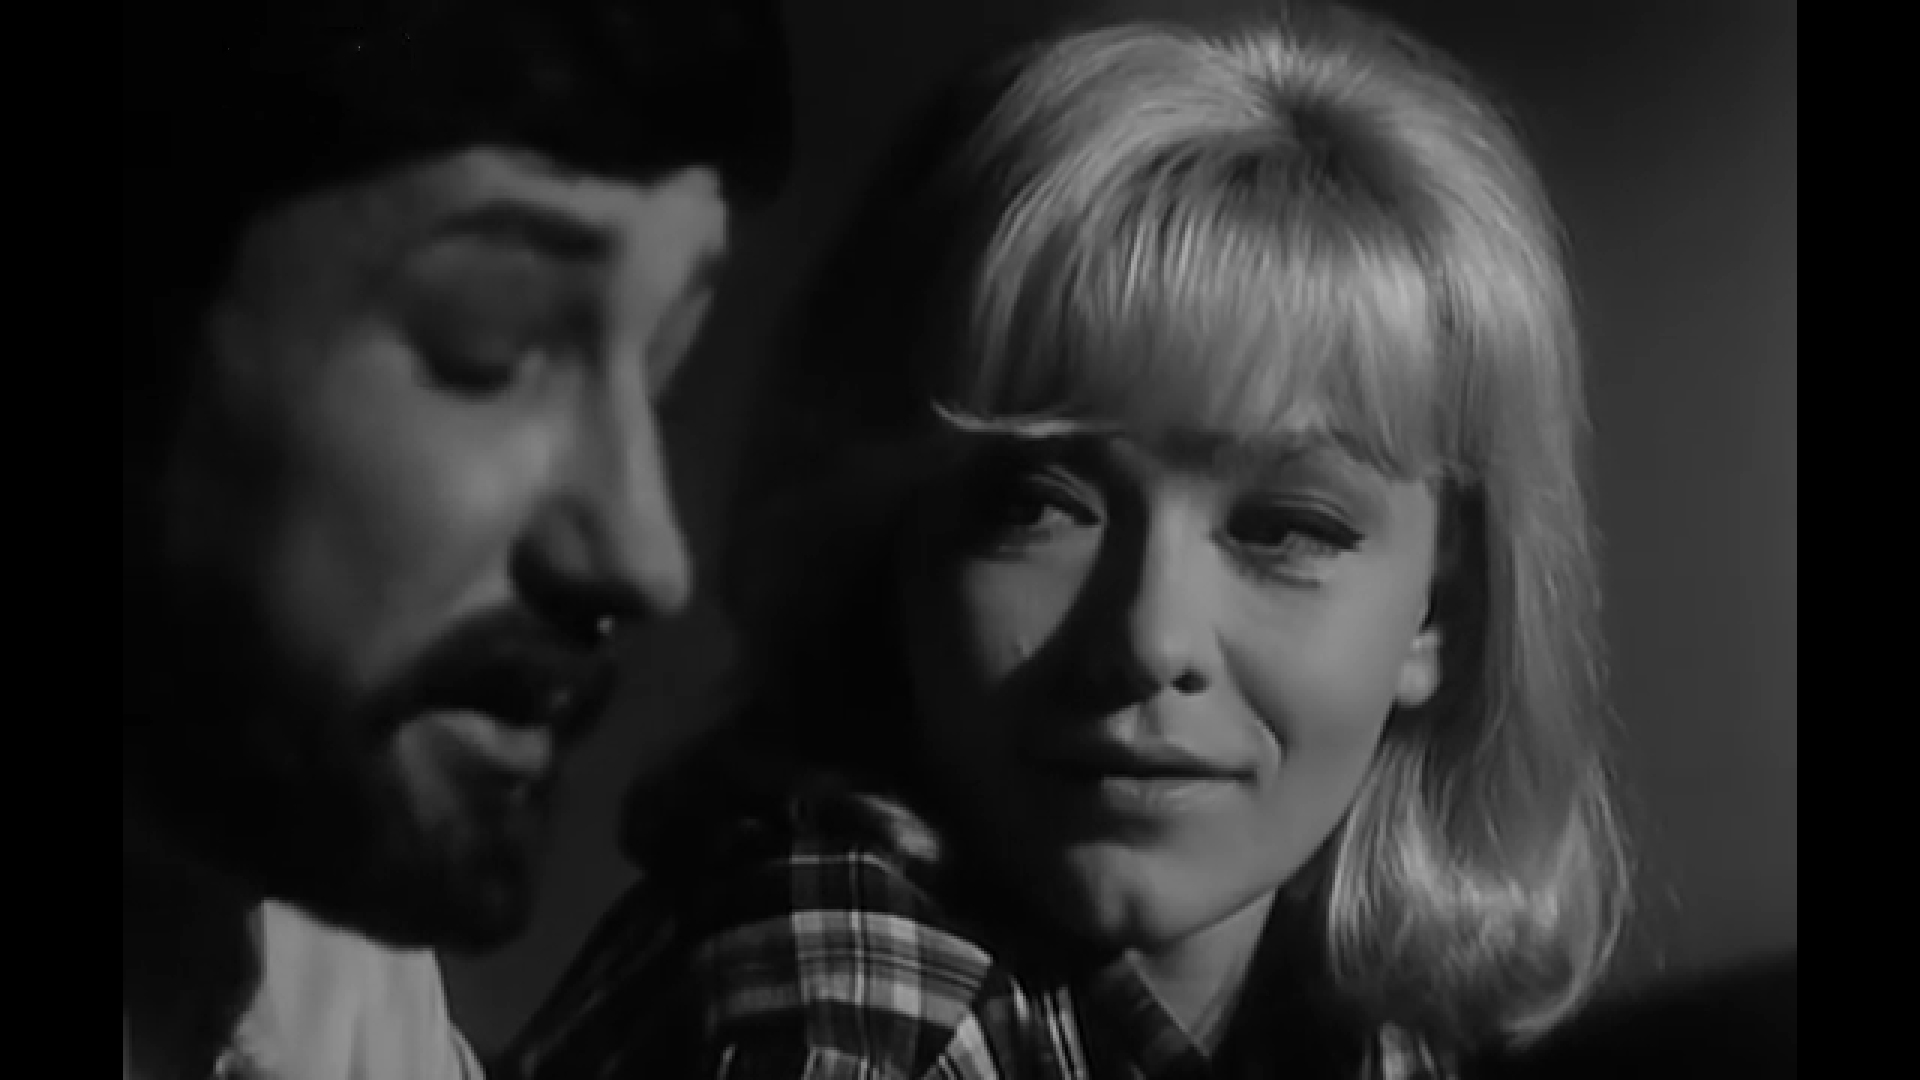 U drami Rondo, koja je snimljena 1966. pod režijom Zvonimira Berkovića, Dravić je ponovno imala glavnu žensku ulogu. Glumila je Nedu, a uz nju glume Relja Bašić i Stevo Žigon. Za film su govorili da se ističe neobično modernim stilom, a proglašen je jednim od najboljih hrvatskih filmova svih vremena 1999. godine.